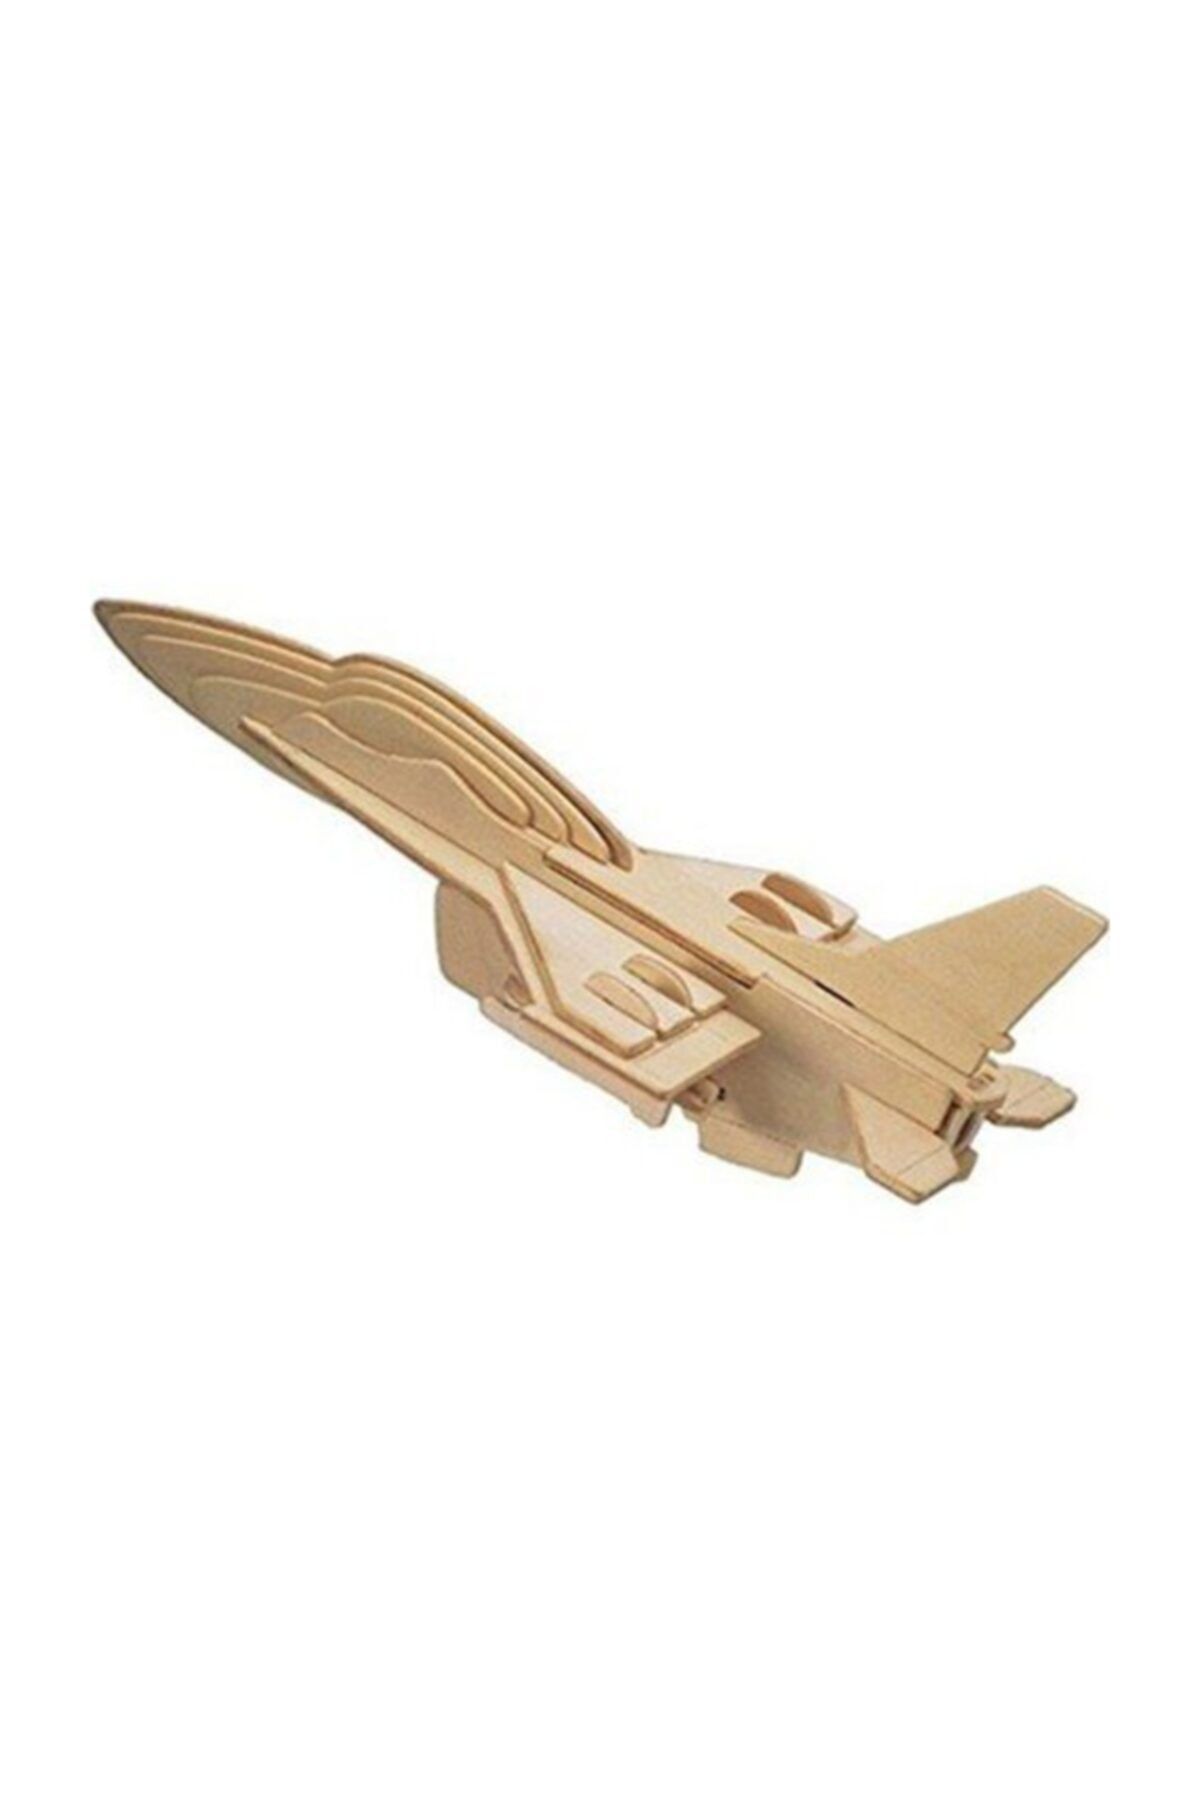 TAYFUN Ahşap 3d Puzzle F16 Uçak Maketi